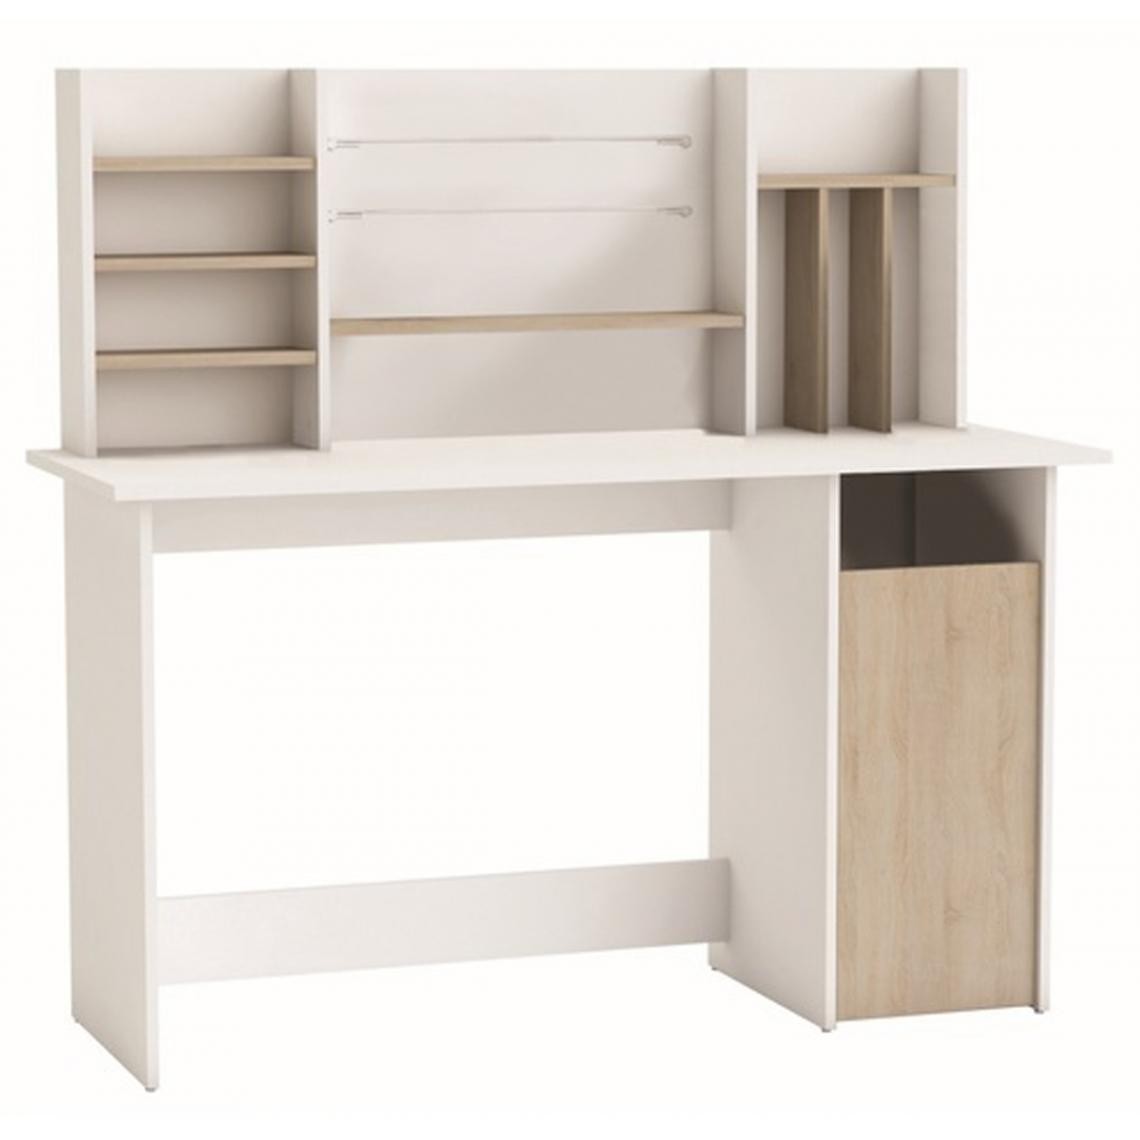 Pegane - Bureau / meuble bureau coloris chêne brosse/blanc mat - 134,8 x 73,7 x 50,1 cm - Bureaux